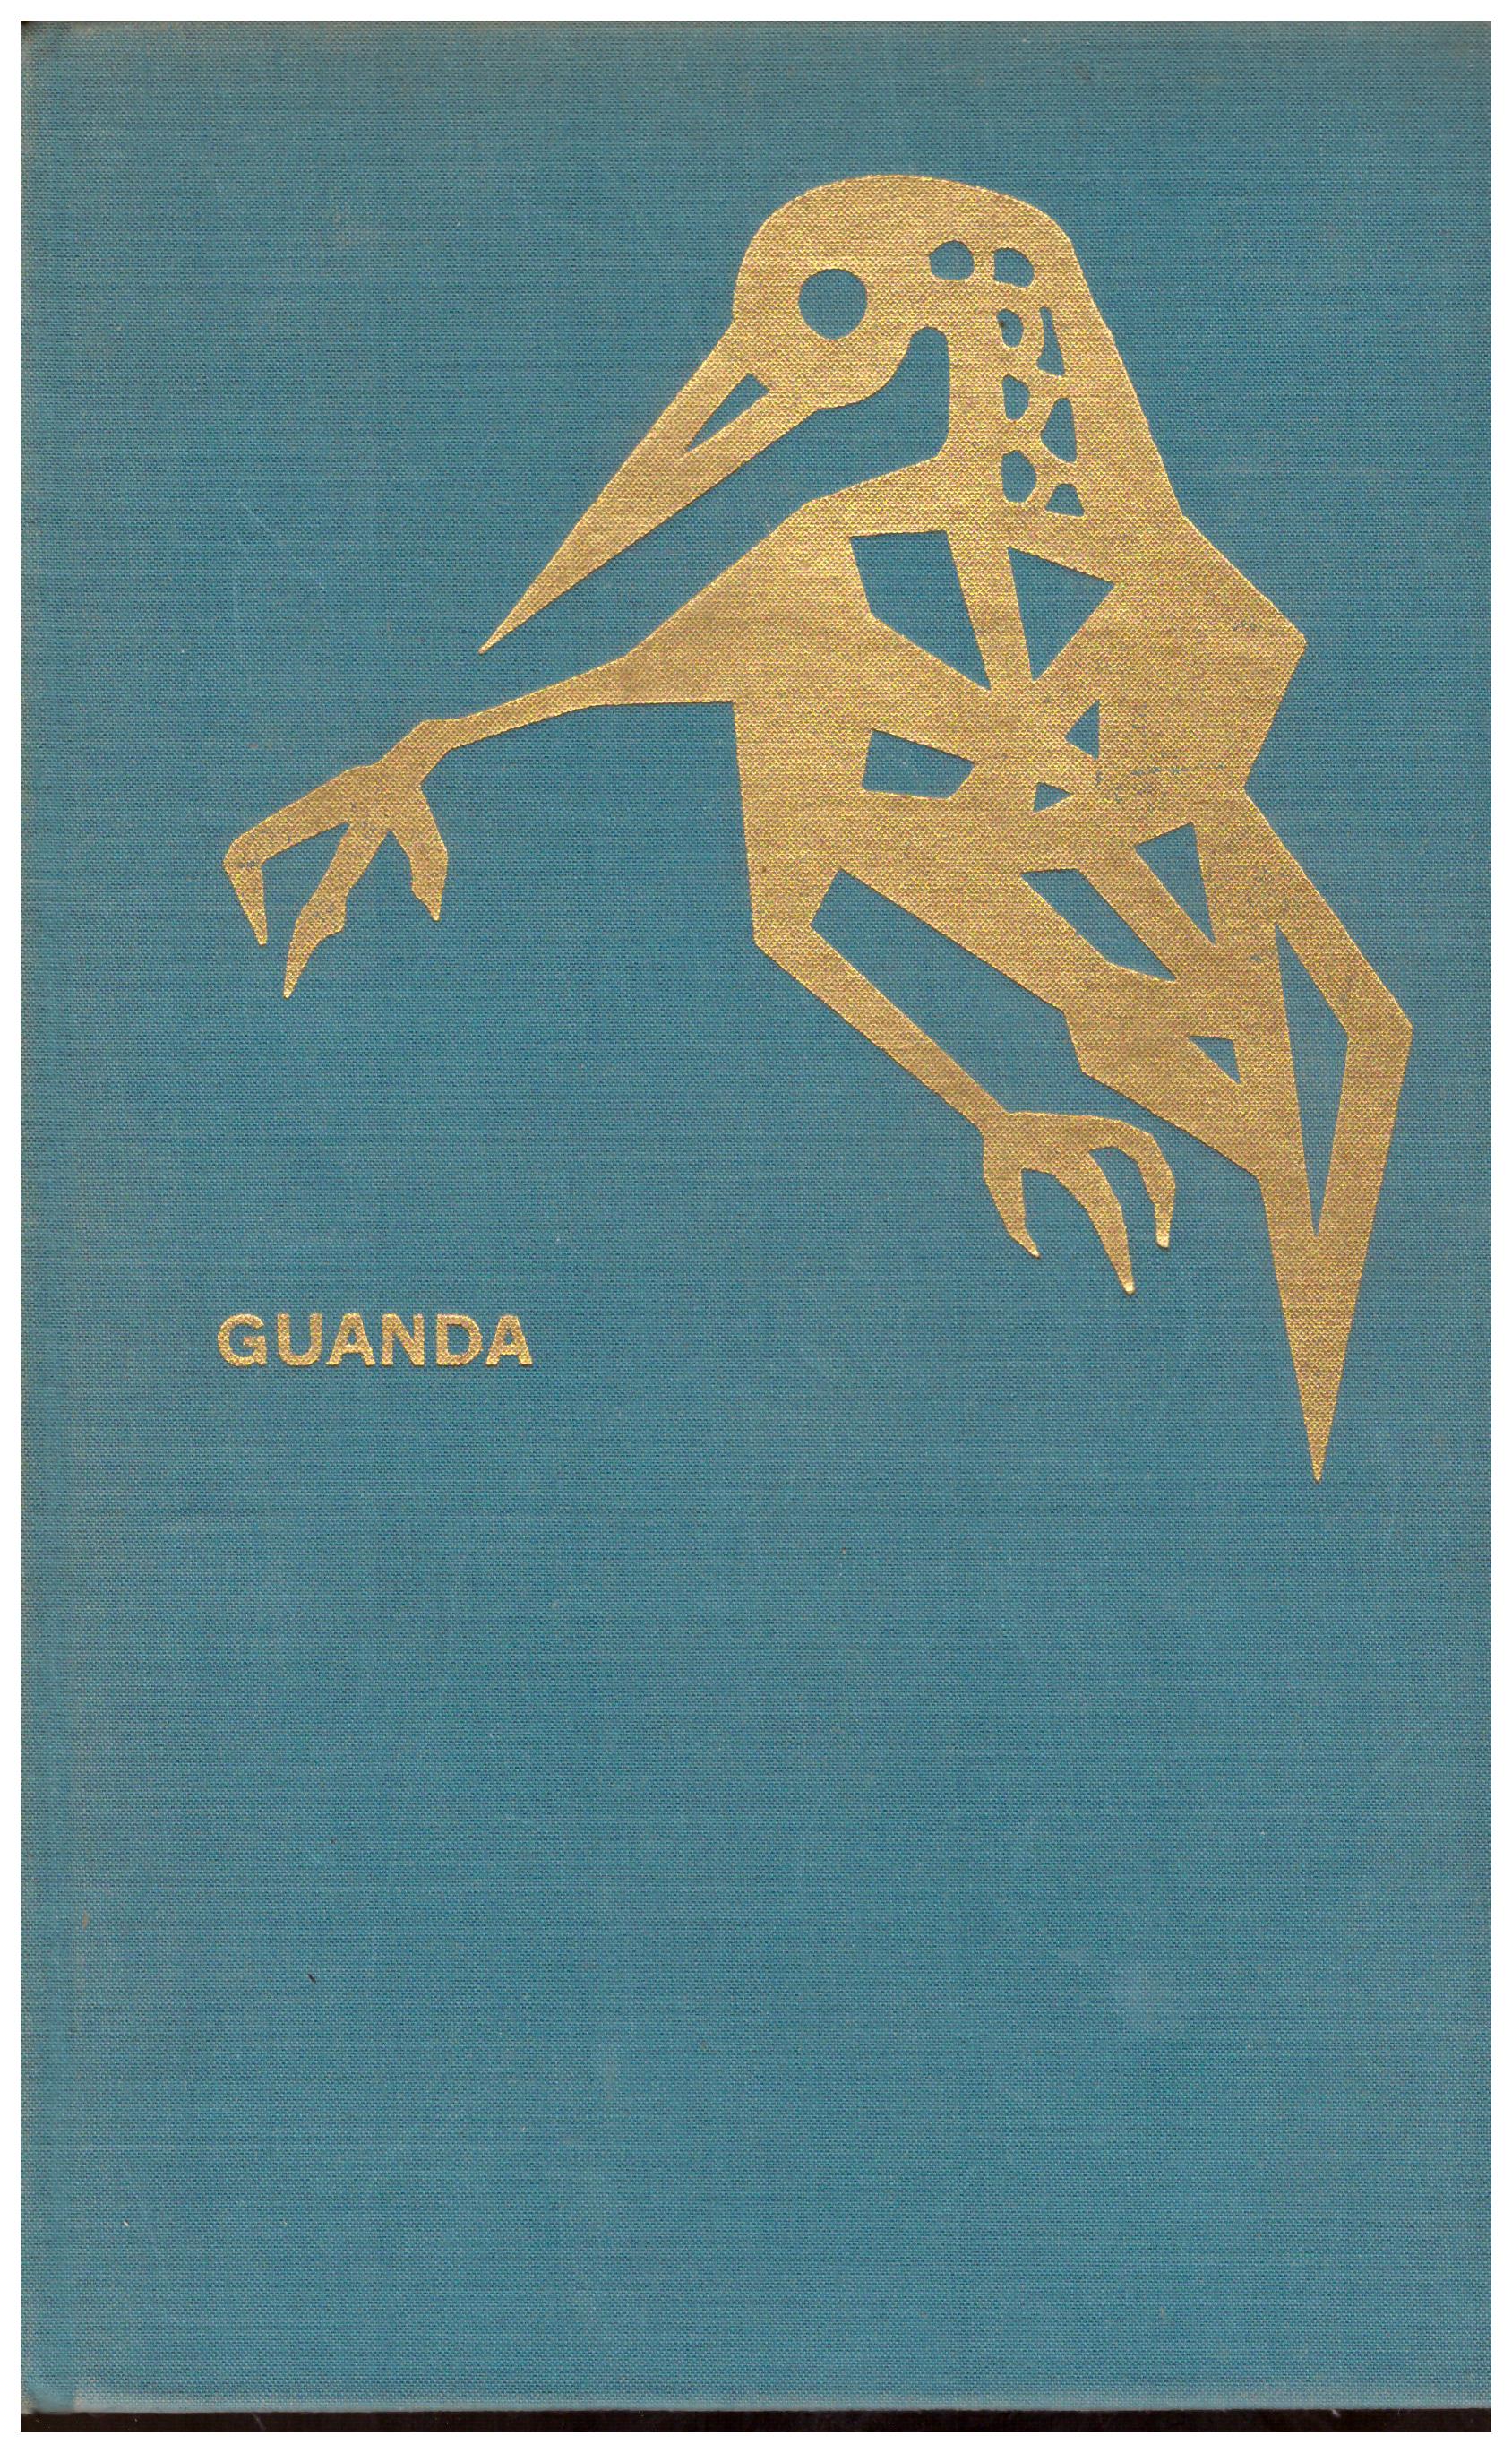 Titolo: La preghiera dell'uomo Autore: AA.VV. Editore: Guanda, 1963